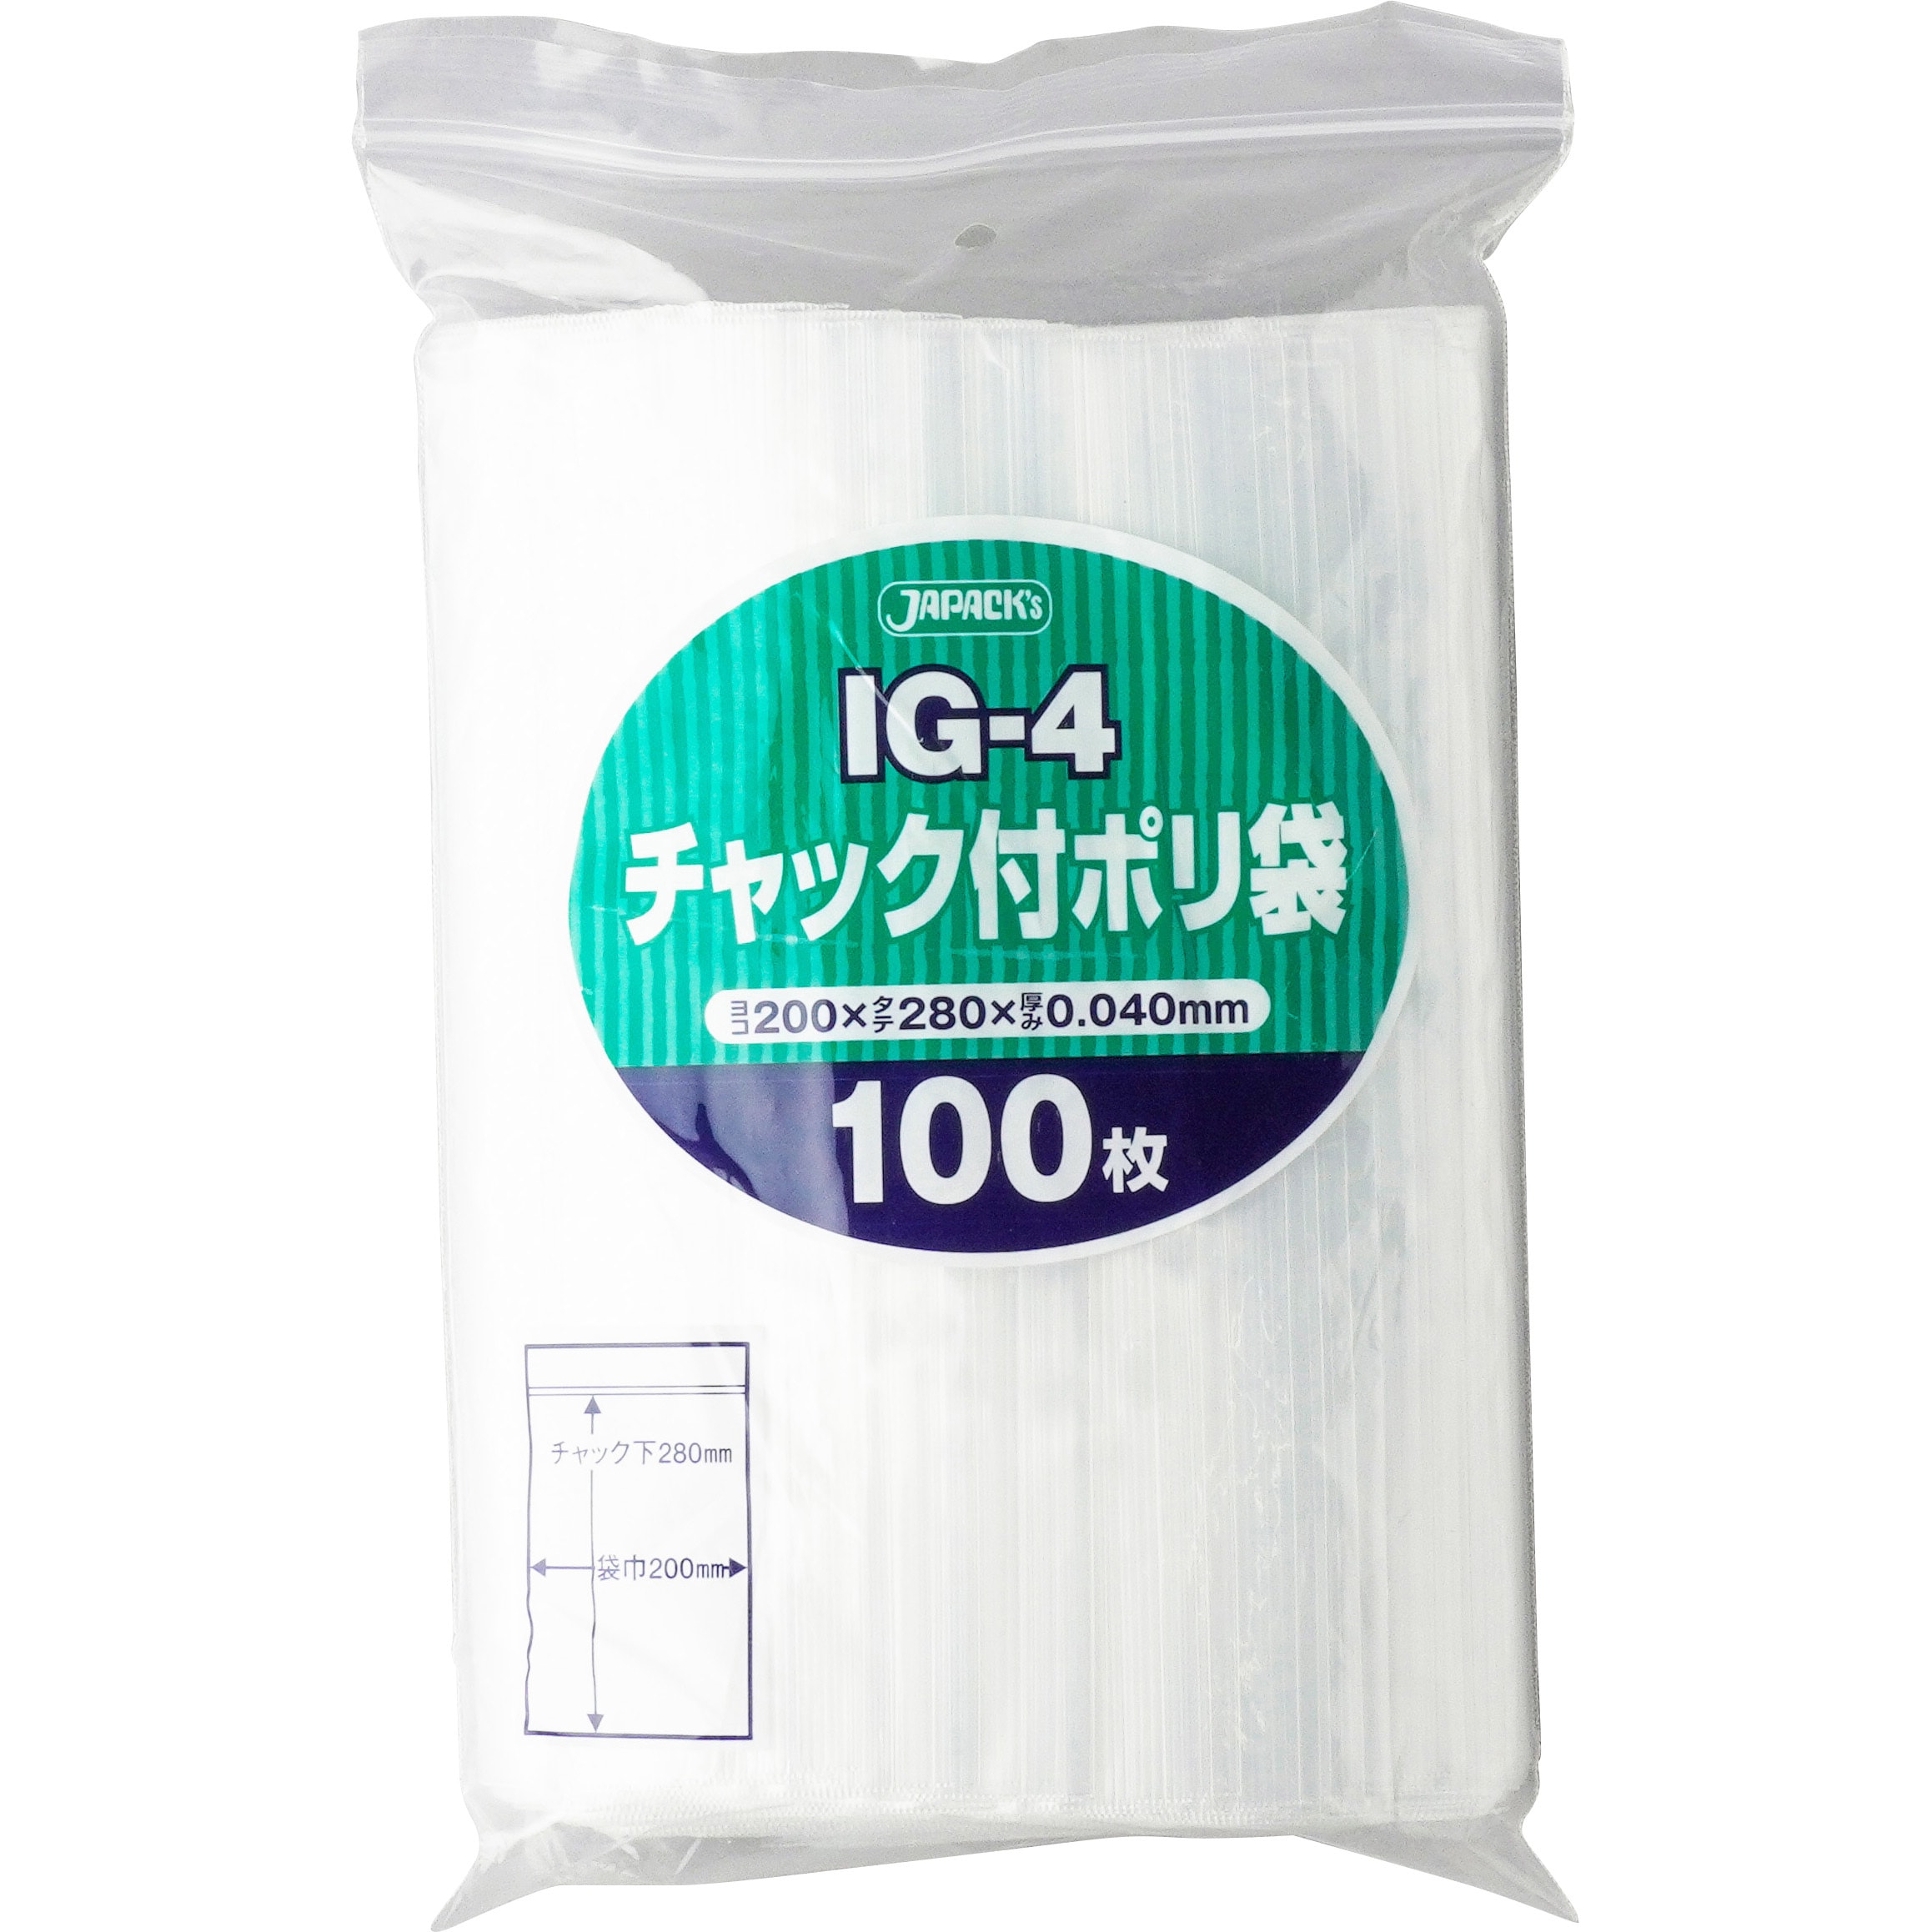 IG-4 チャック付ポリ袋 1パック(100枚) 松吉医科器械 【通販サイトMonotaRO】